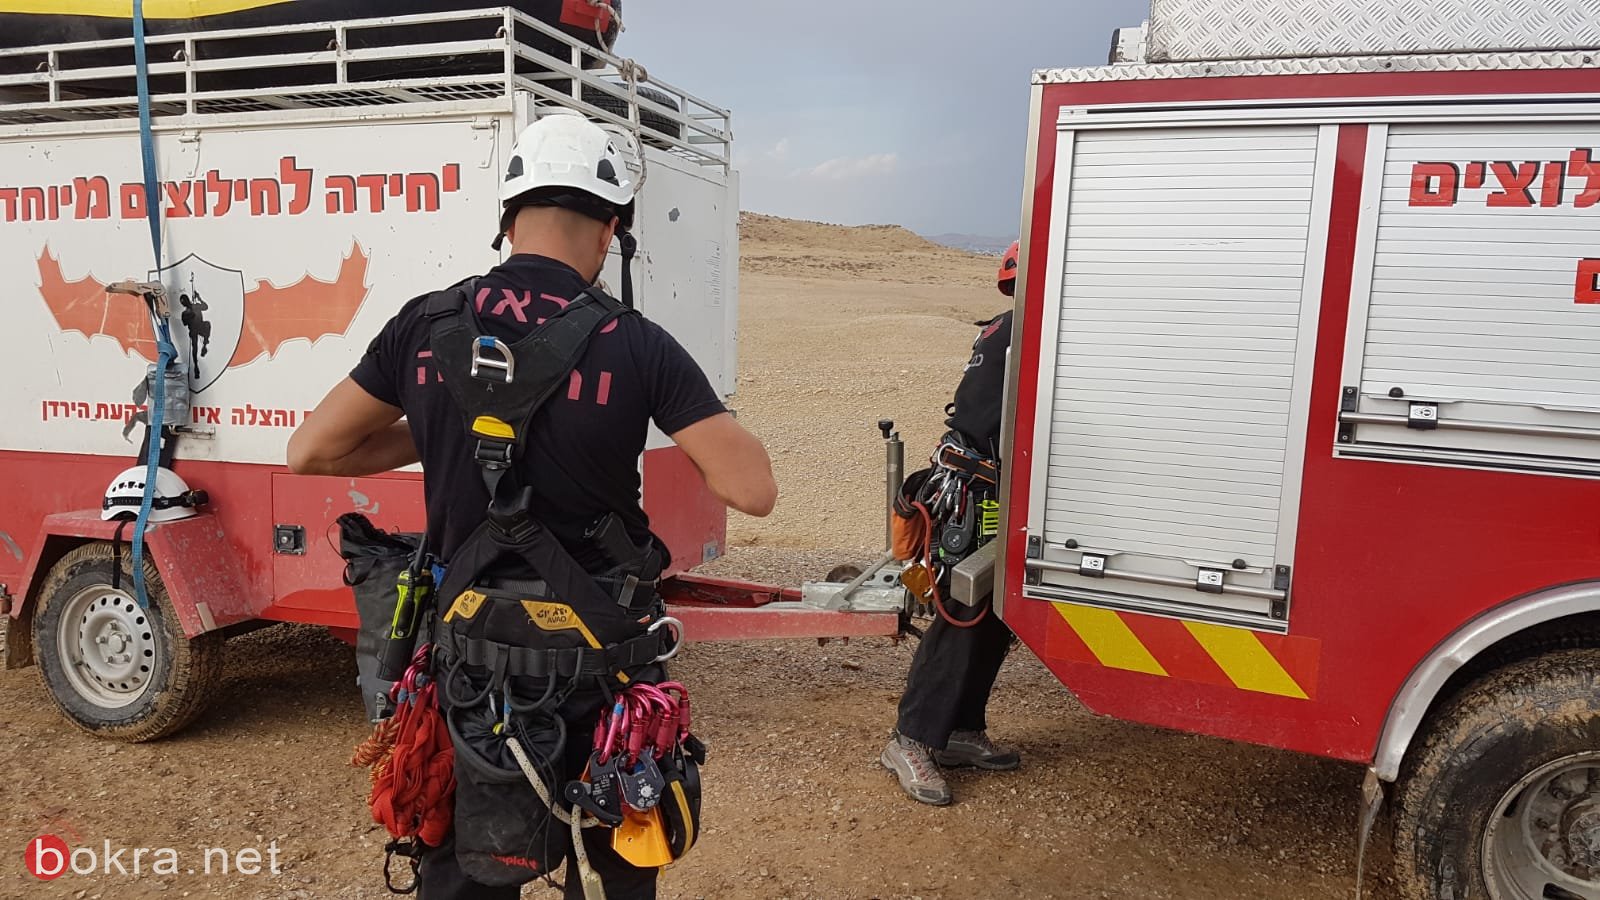 بسبب الفياضانات إنقاذ 4 اشخاص عالقين في مجرى وادي "اوج" شمالي البحر الميت-0